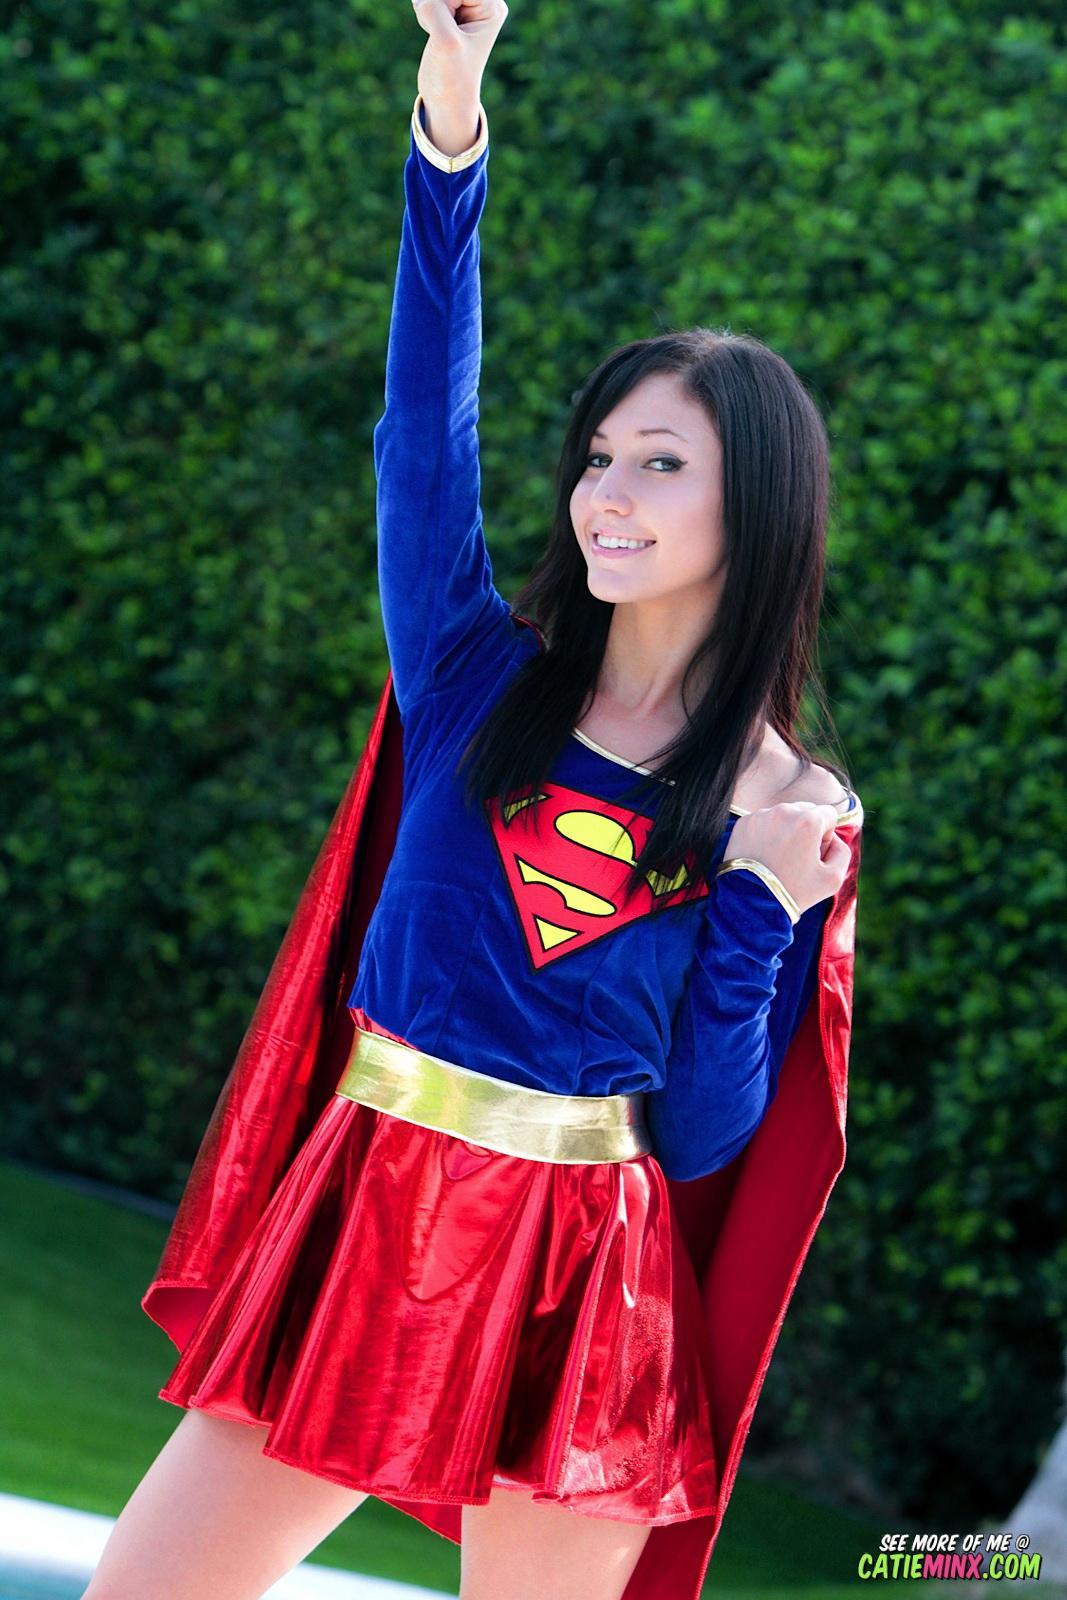 La nerd dai modi gentili Catie Minx rivela i suoi poteri super cattivi come supergirl
 #53722775